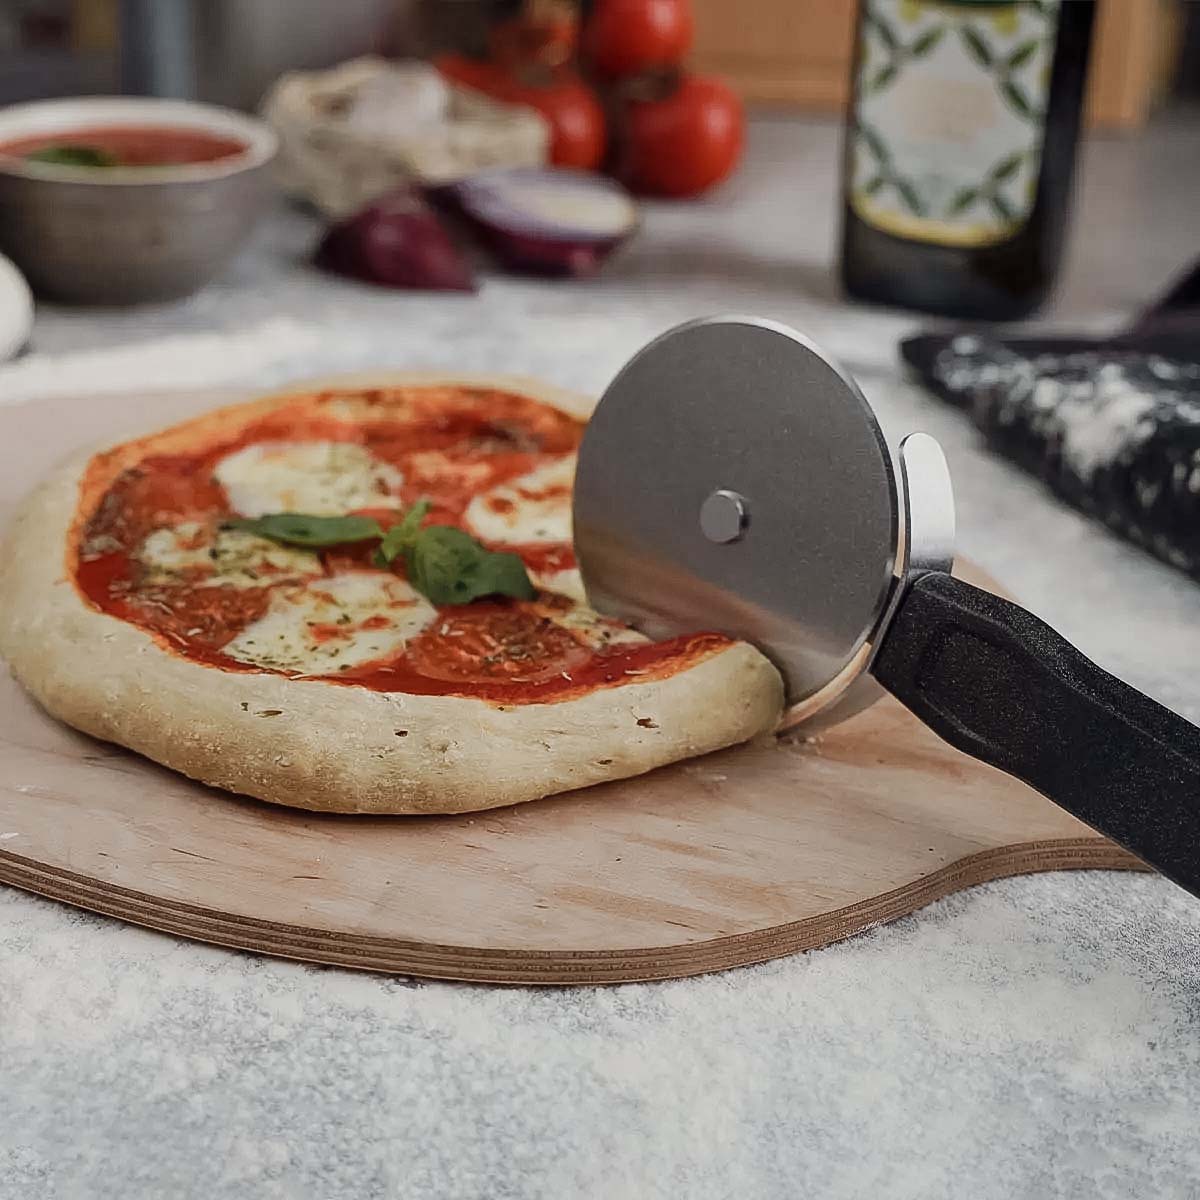 SANTOS Edelstahl Pizzaschneider - 27x2x10cm - Pizzaroller, Pizzamesser,  Pizza-Cutter - ergonomischem Griff - sicheres & verletzungsfreies schneiden